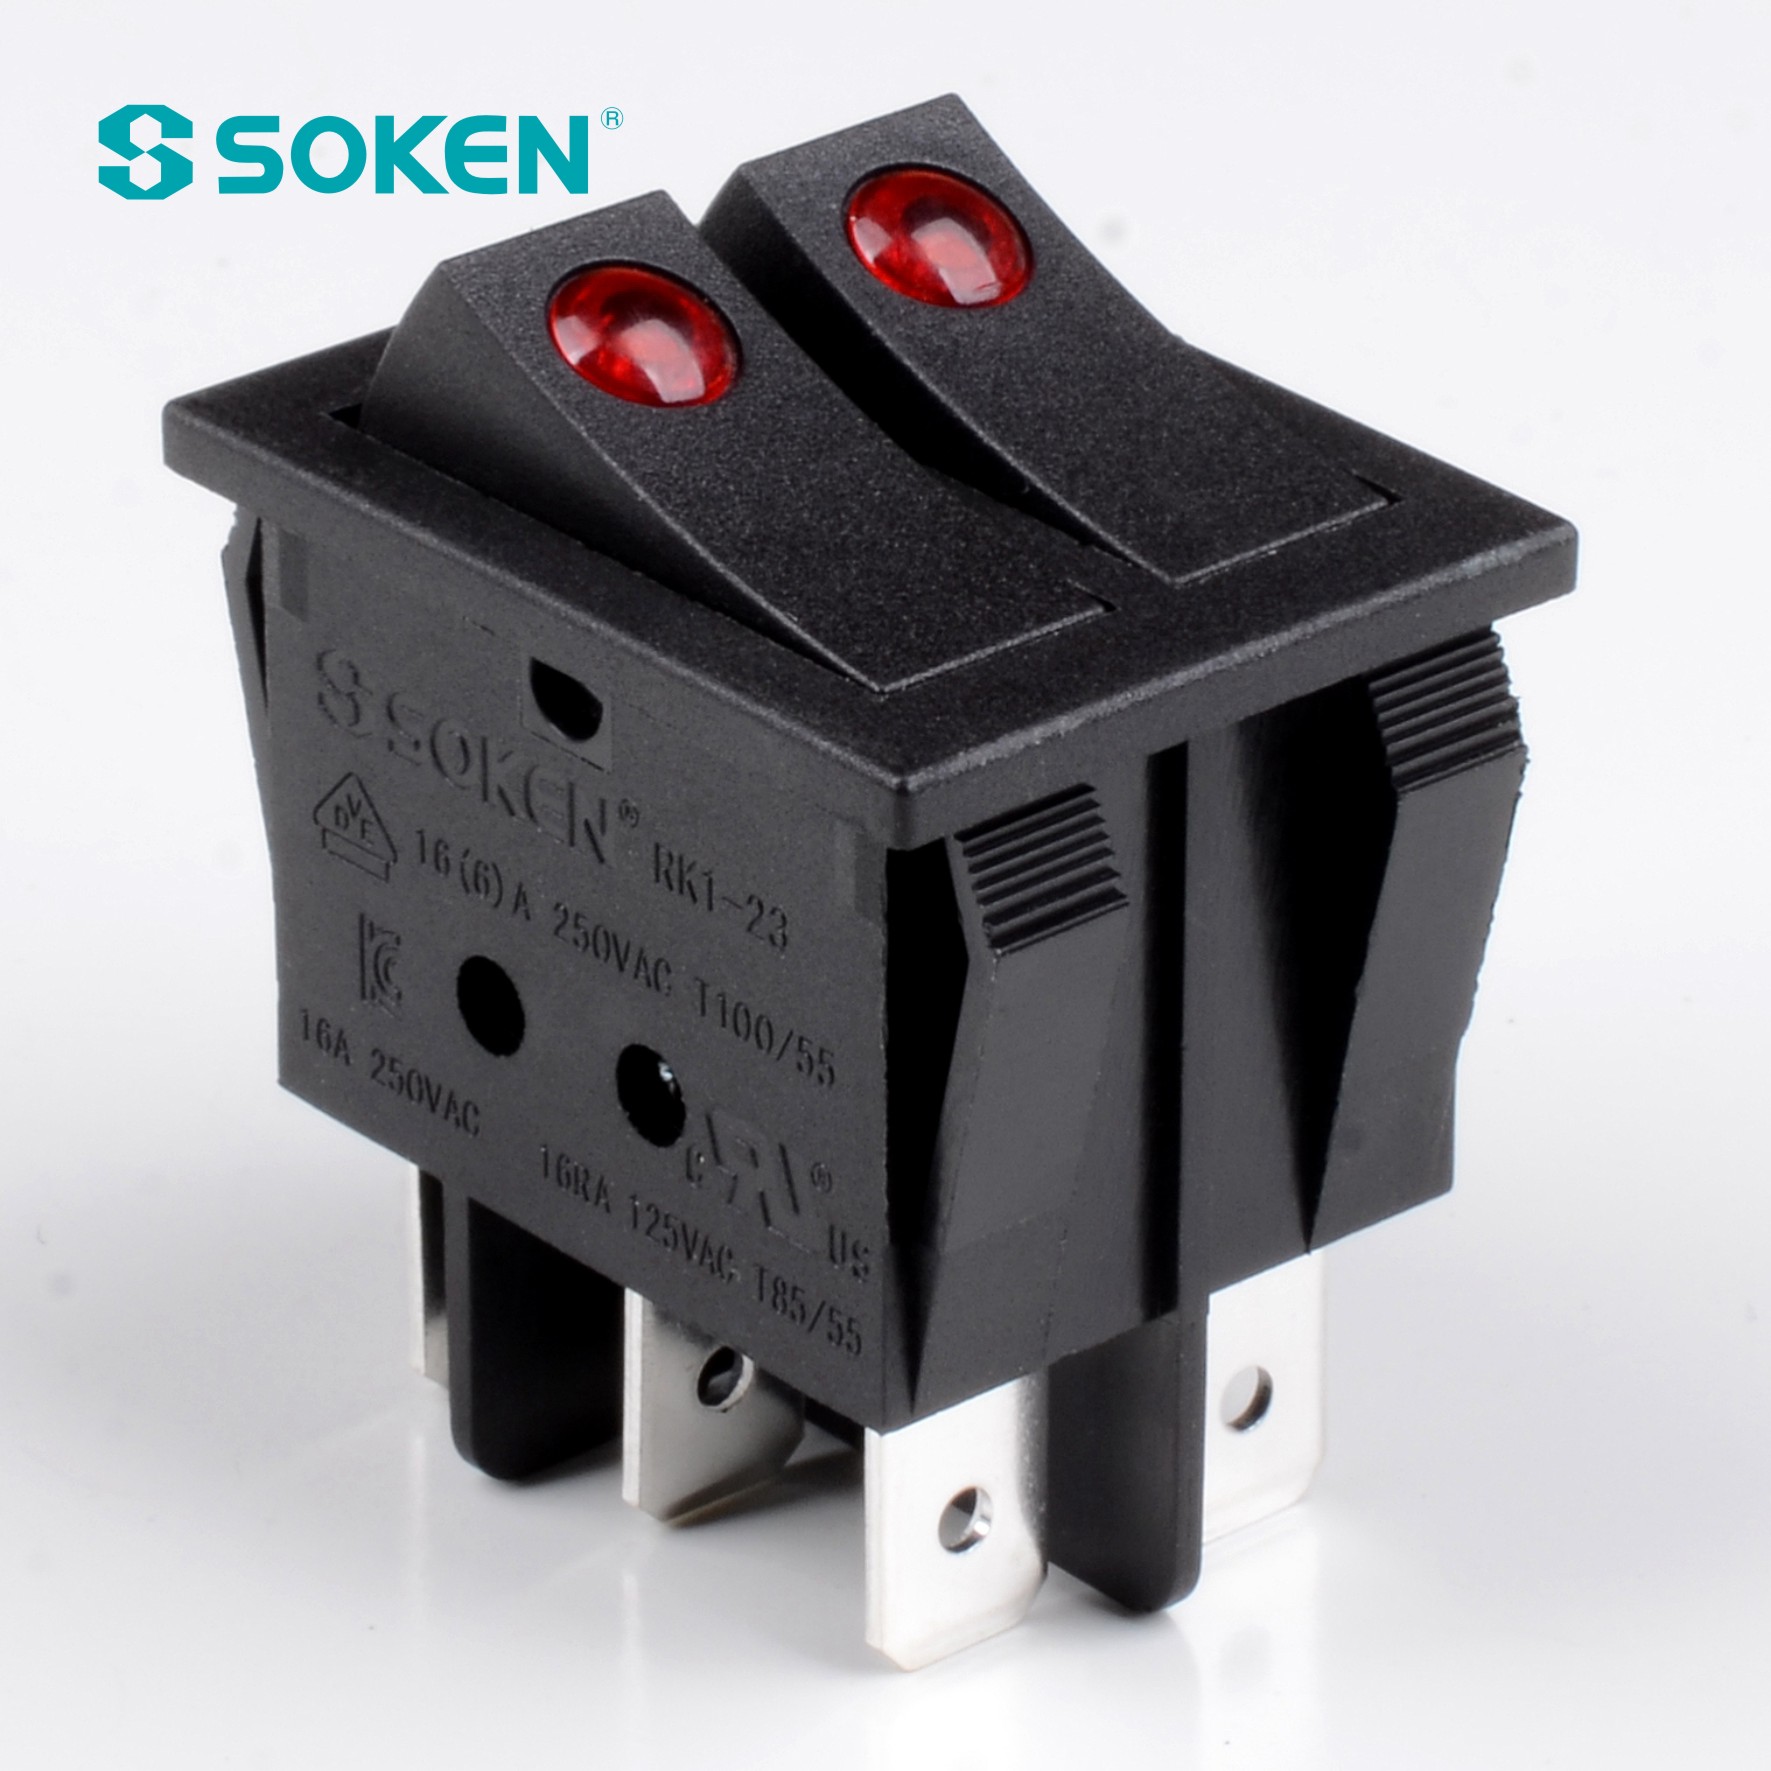 Soken Switch CQC T100/55 Rocker Switch Kema Keur Switch